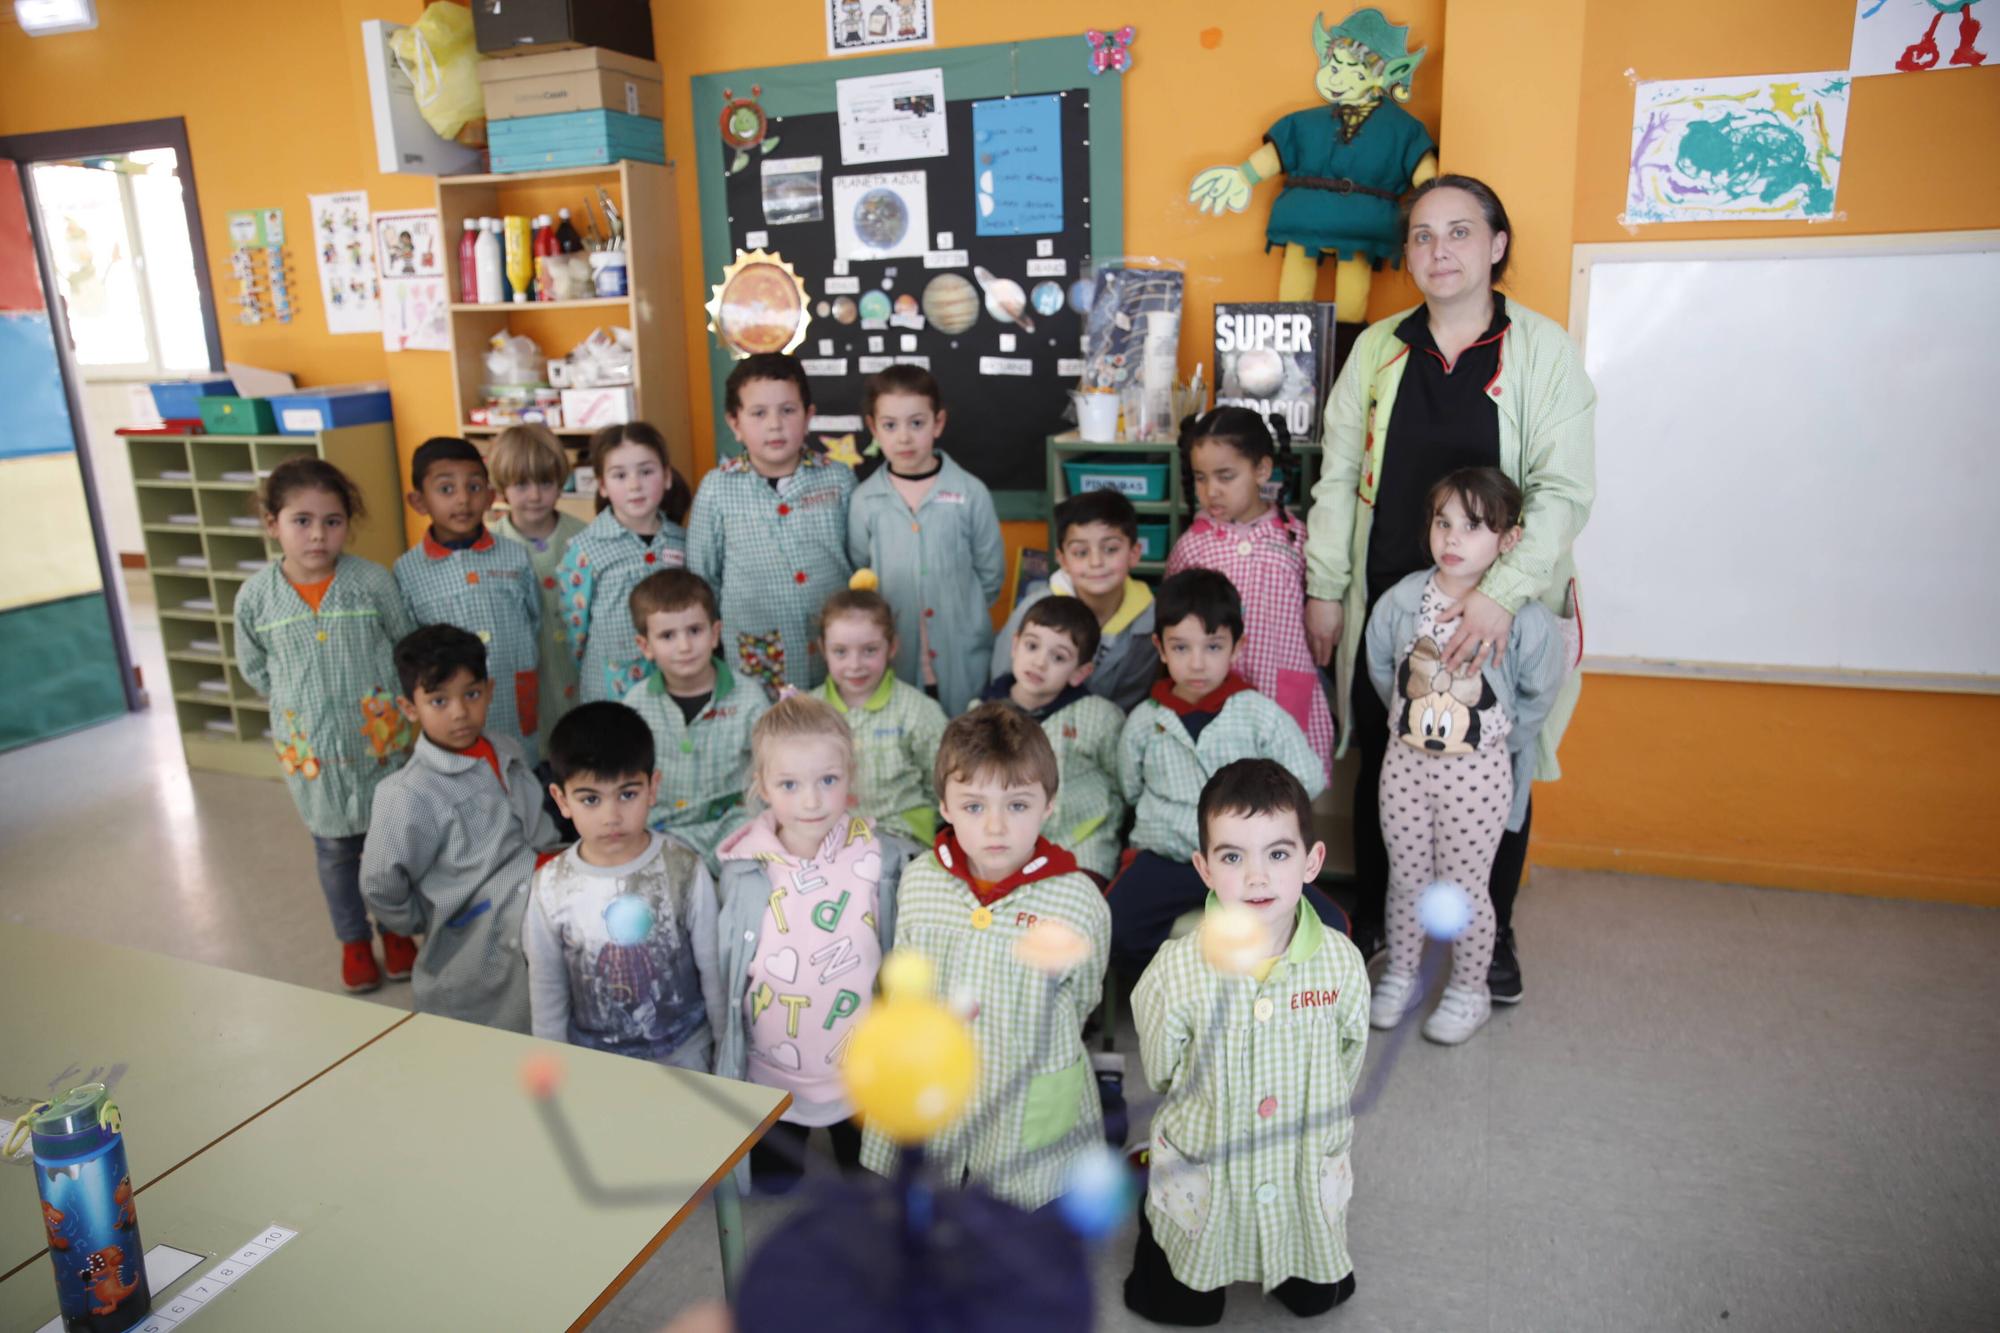 La serie "De aula en aula" visita el colegio García Lorca